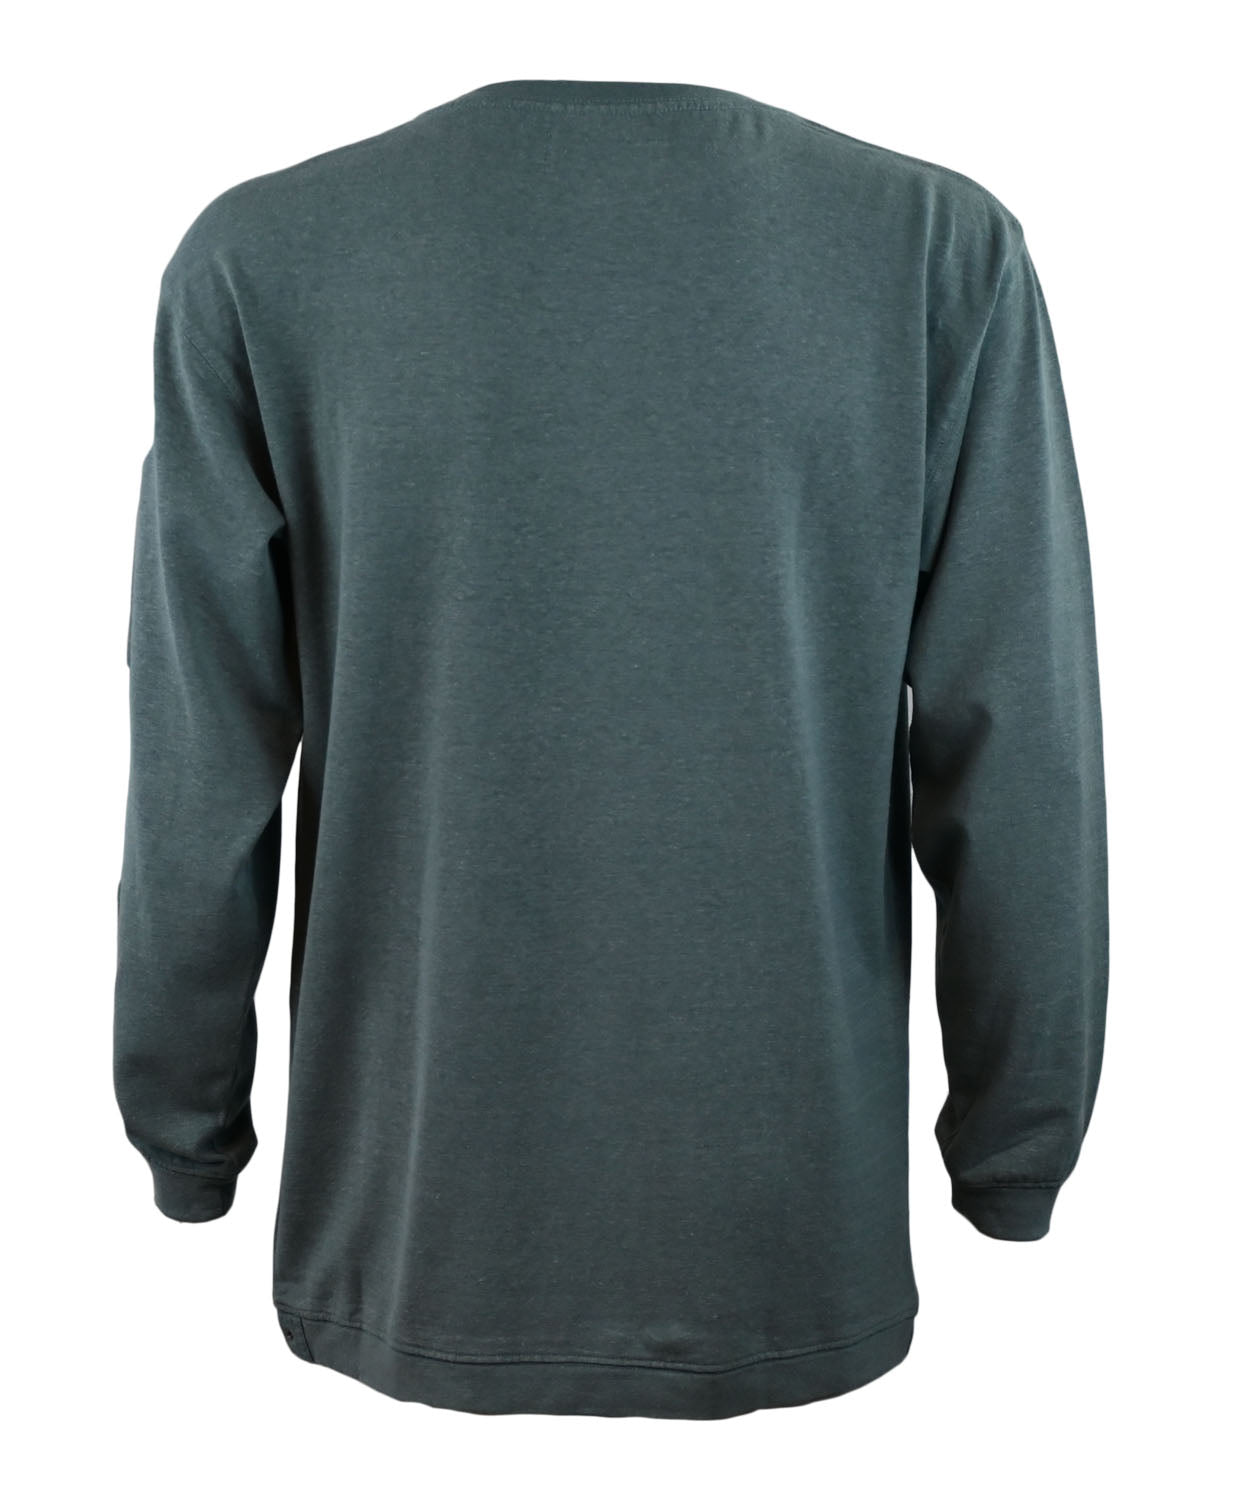 Premium Generational Hemp Shirt- Long Sleeve